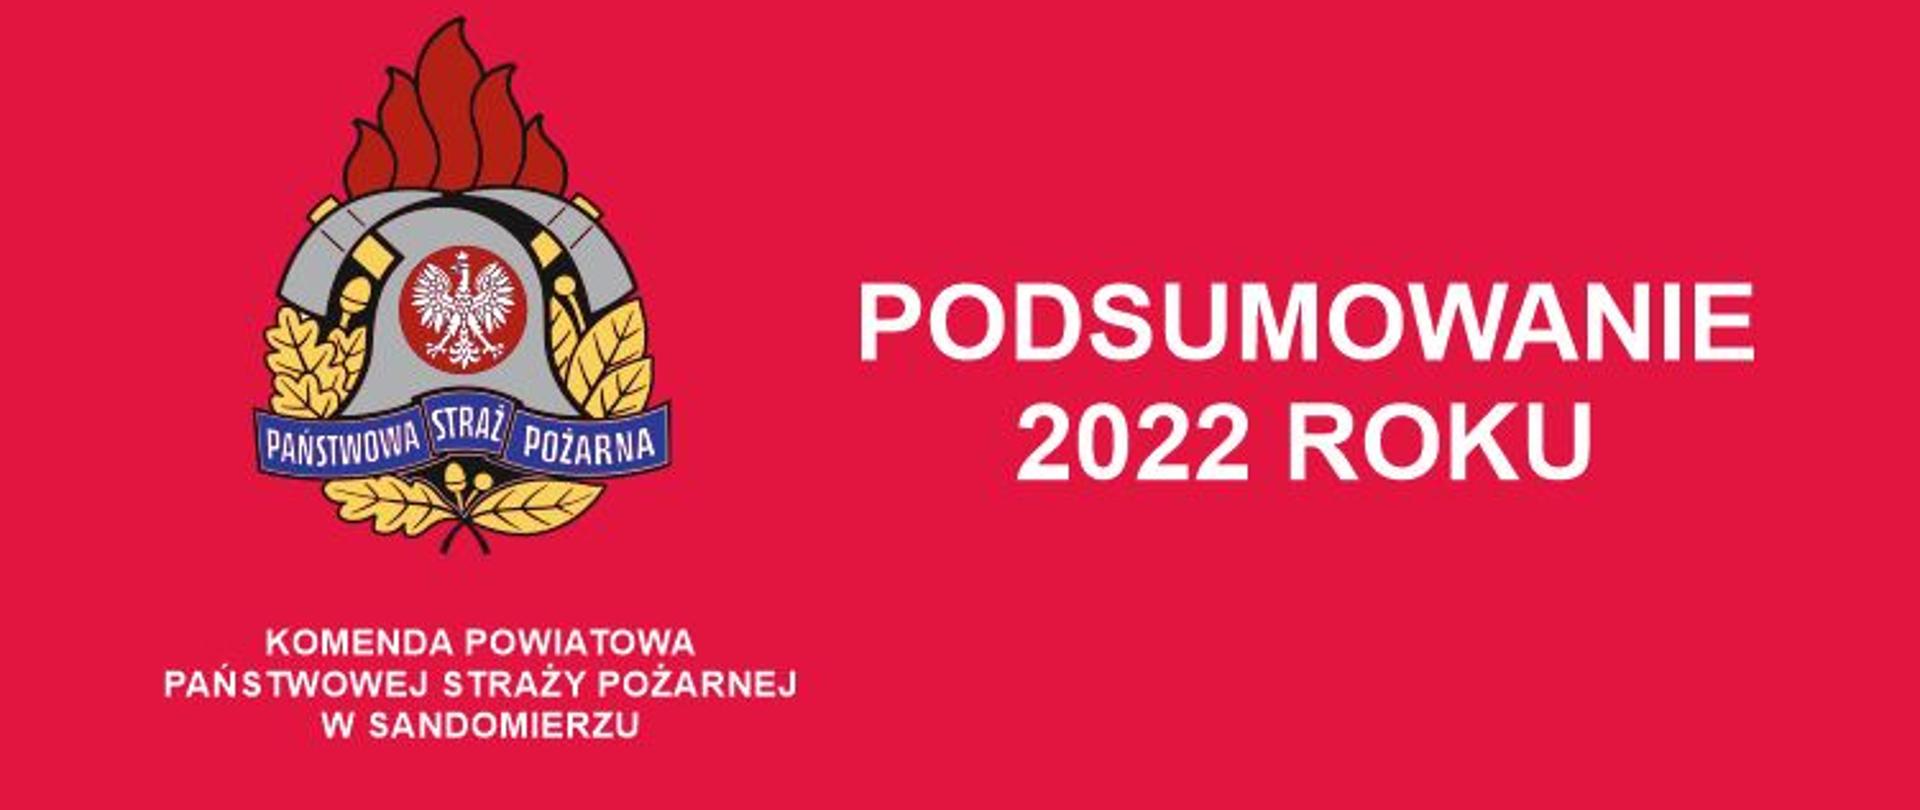 Logo PSP Komenda Powiatowa Państwowej Straży Pożarnej w Sandomierzu, Podsumowanie 2022 roku